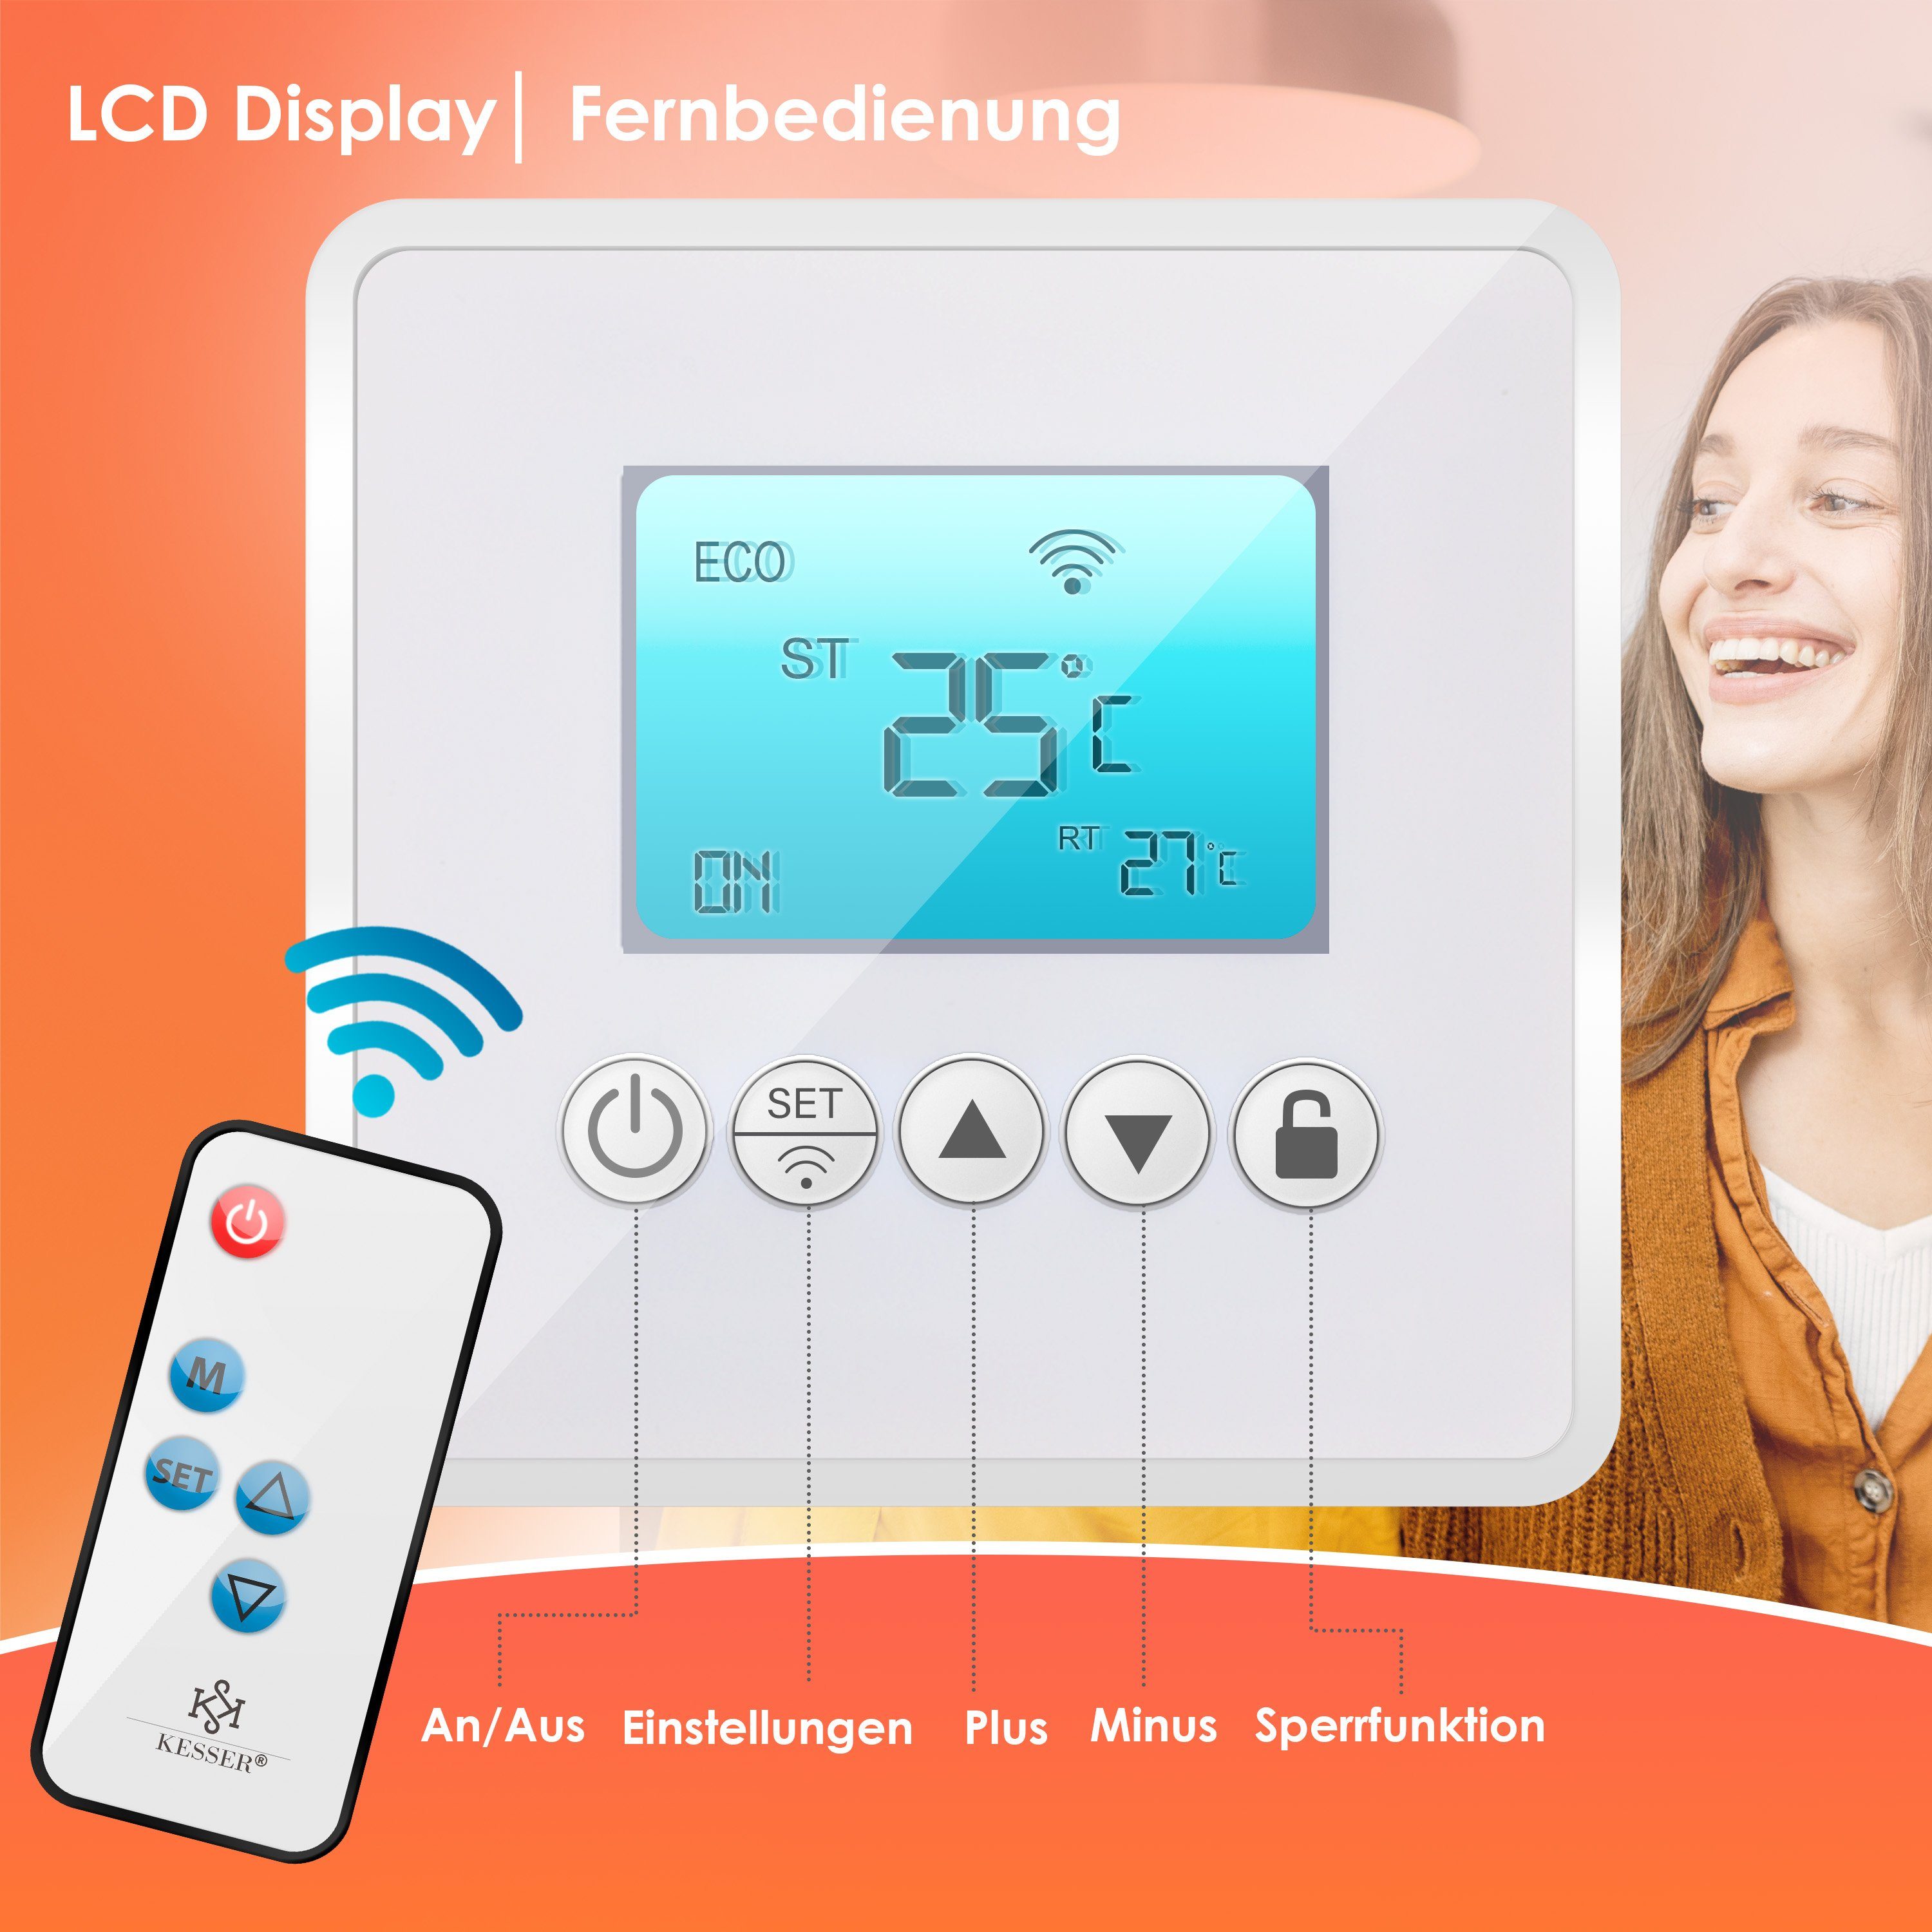 Weiß Fernbedienung Watt 2er ) LCD-Display Infrarotheizung, mit 425 Watt KESSER - 425-550 Set Infrarotheizung (